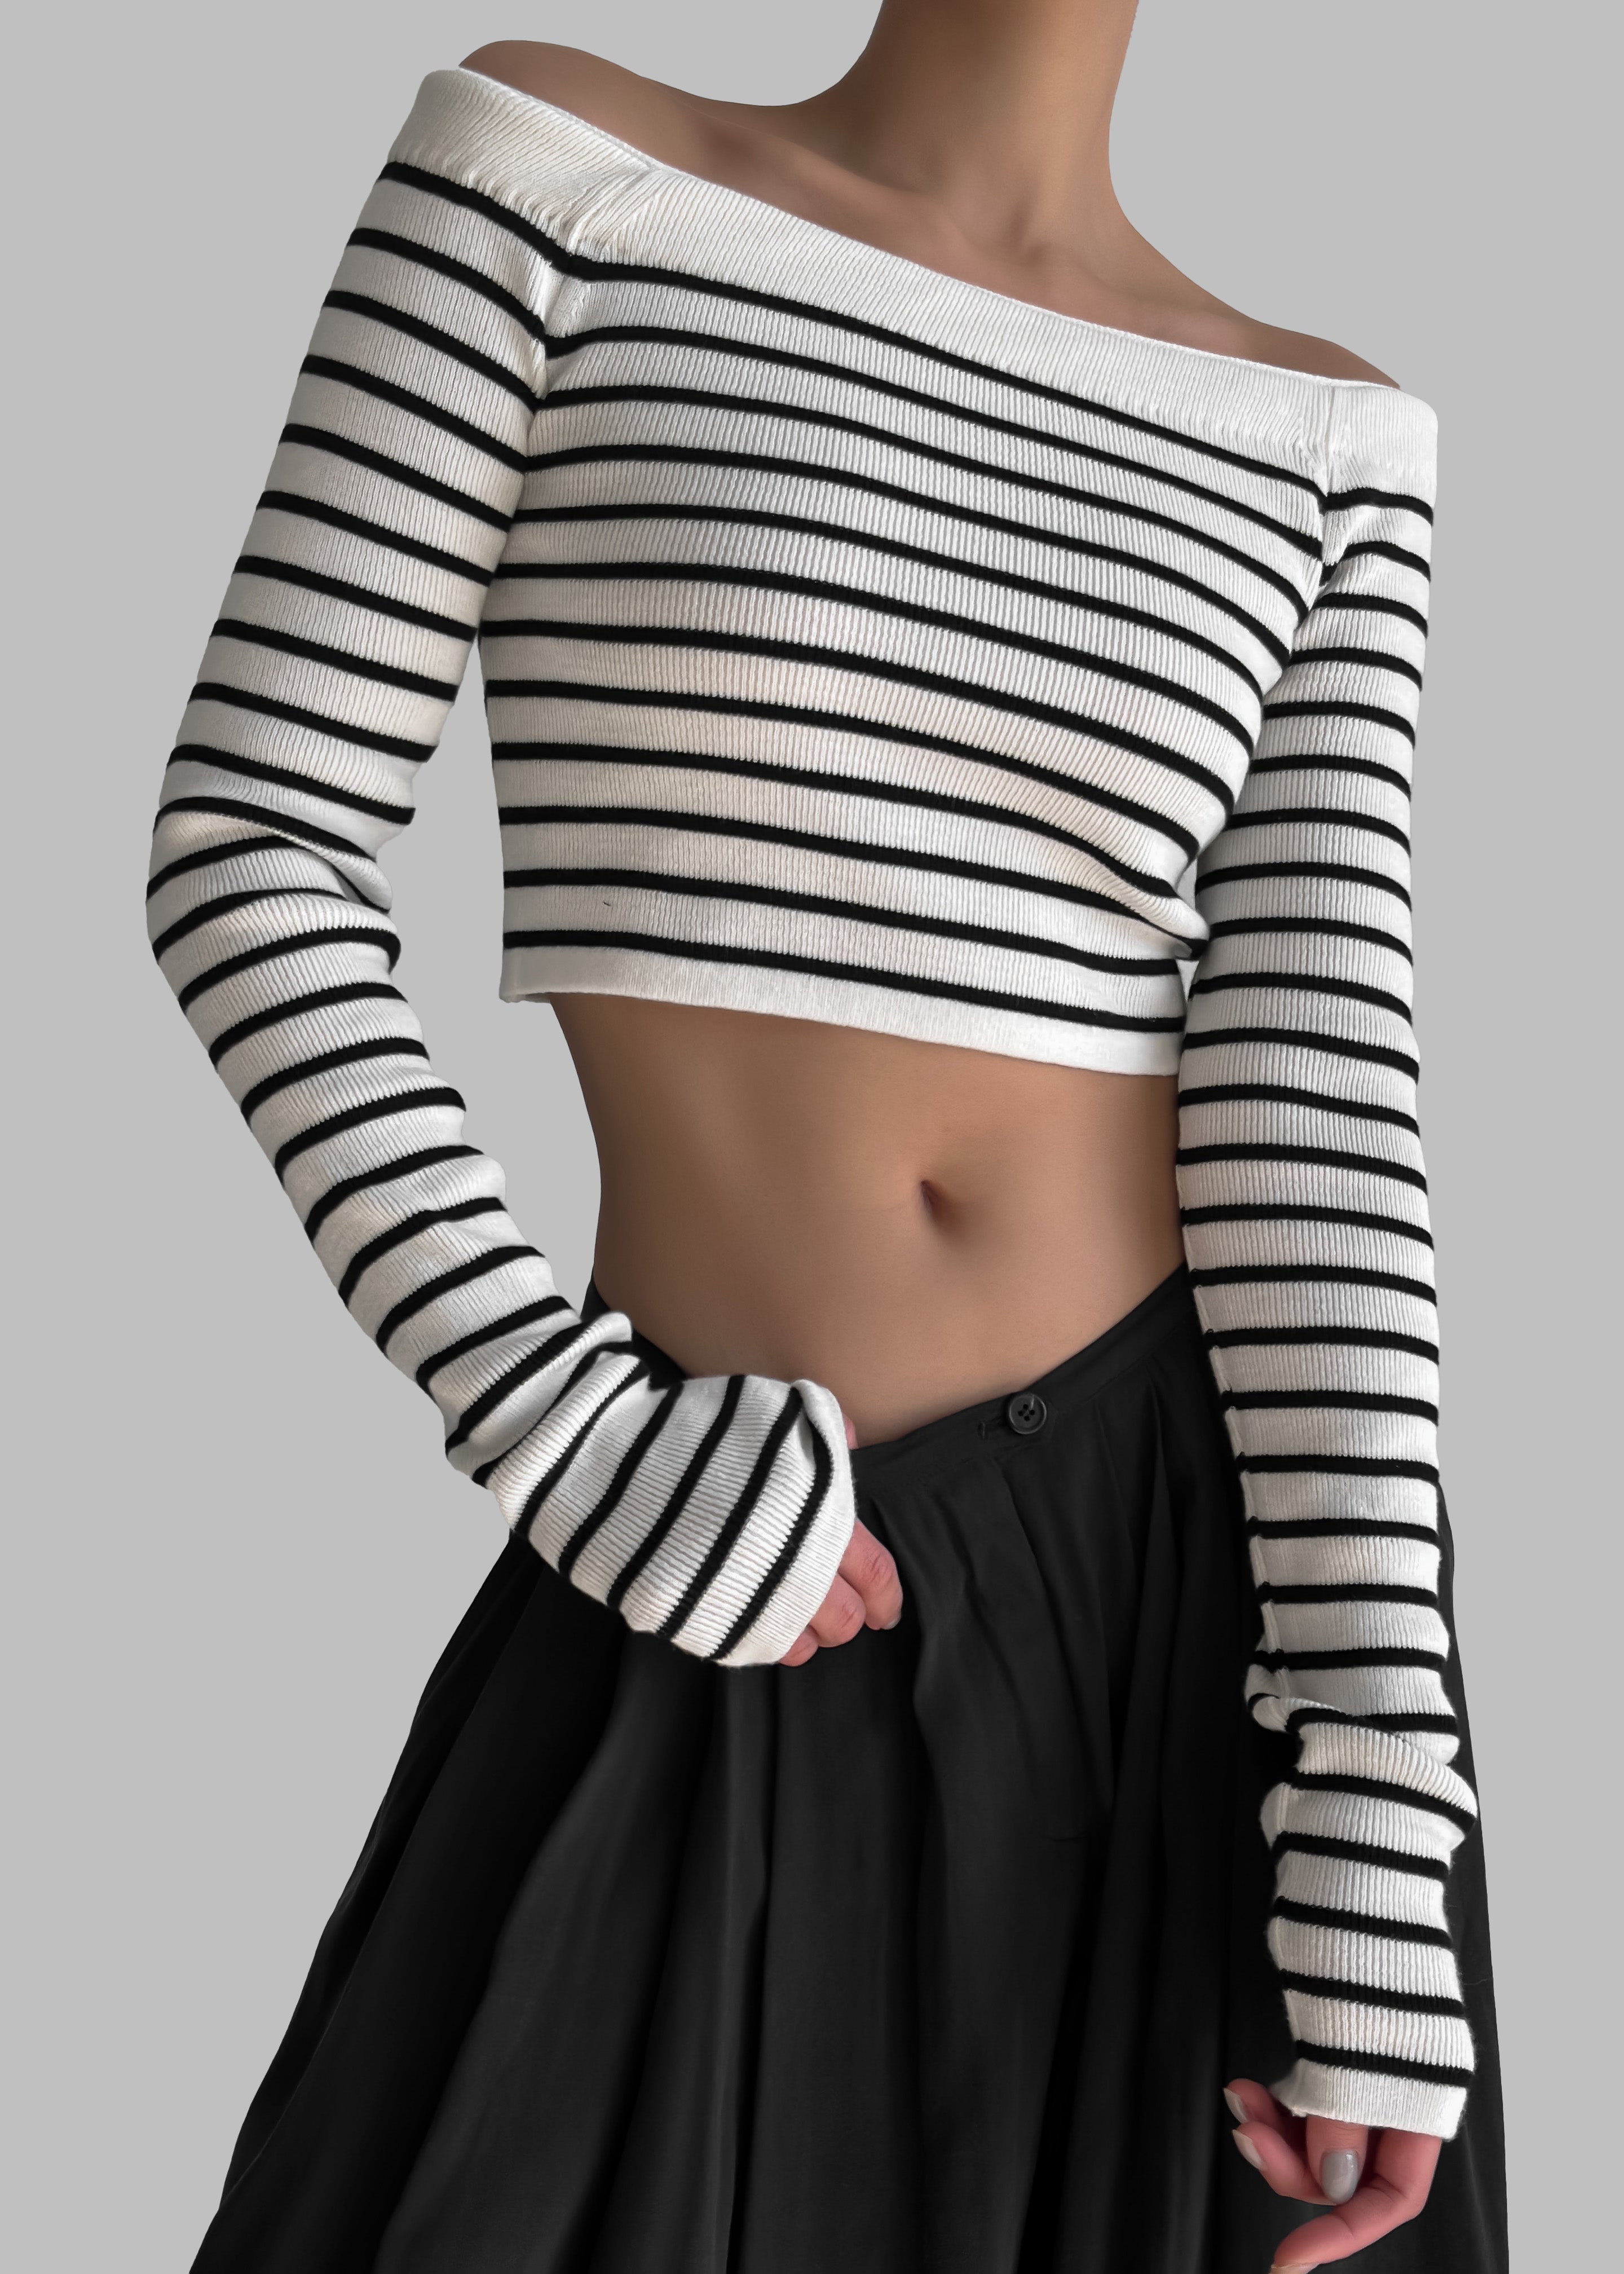 Coco White Off Shoulder Sweater - Black Stripe - 1